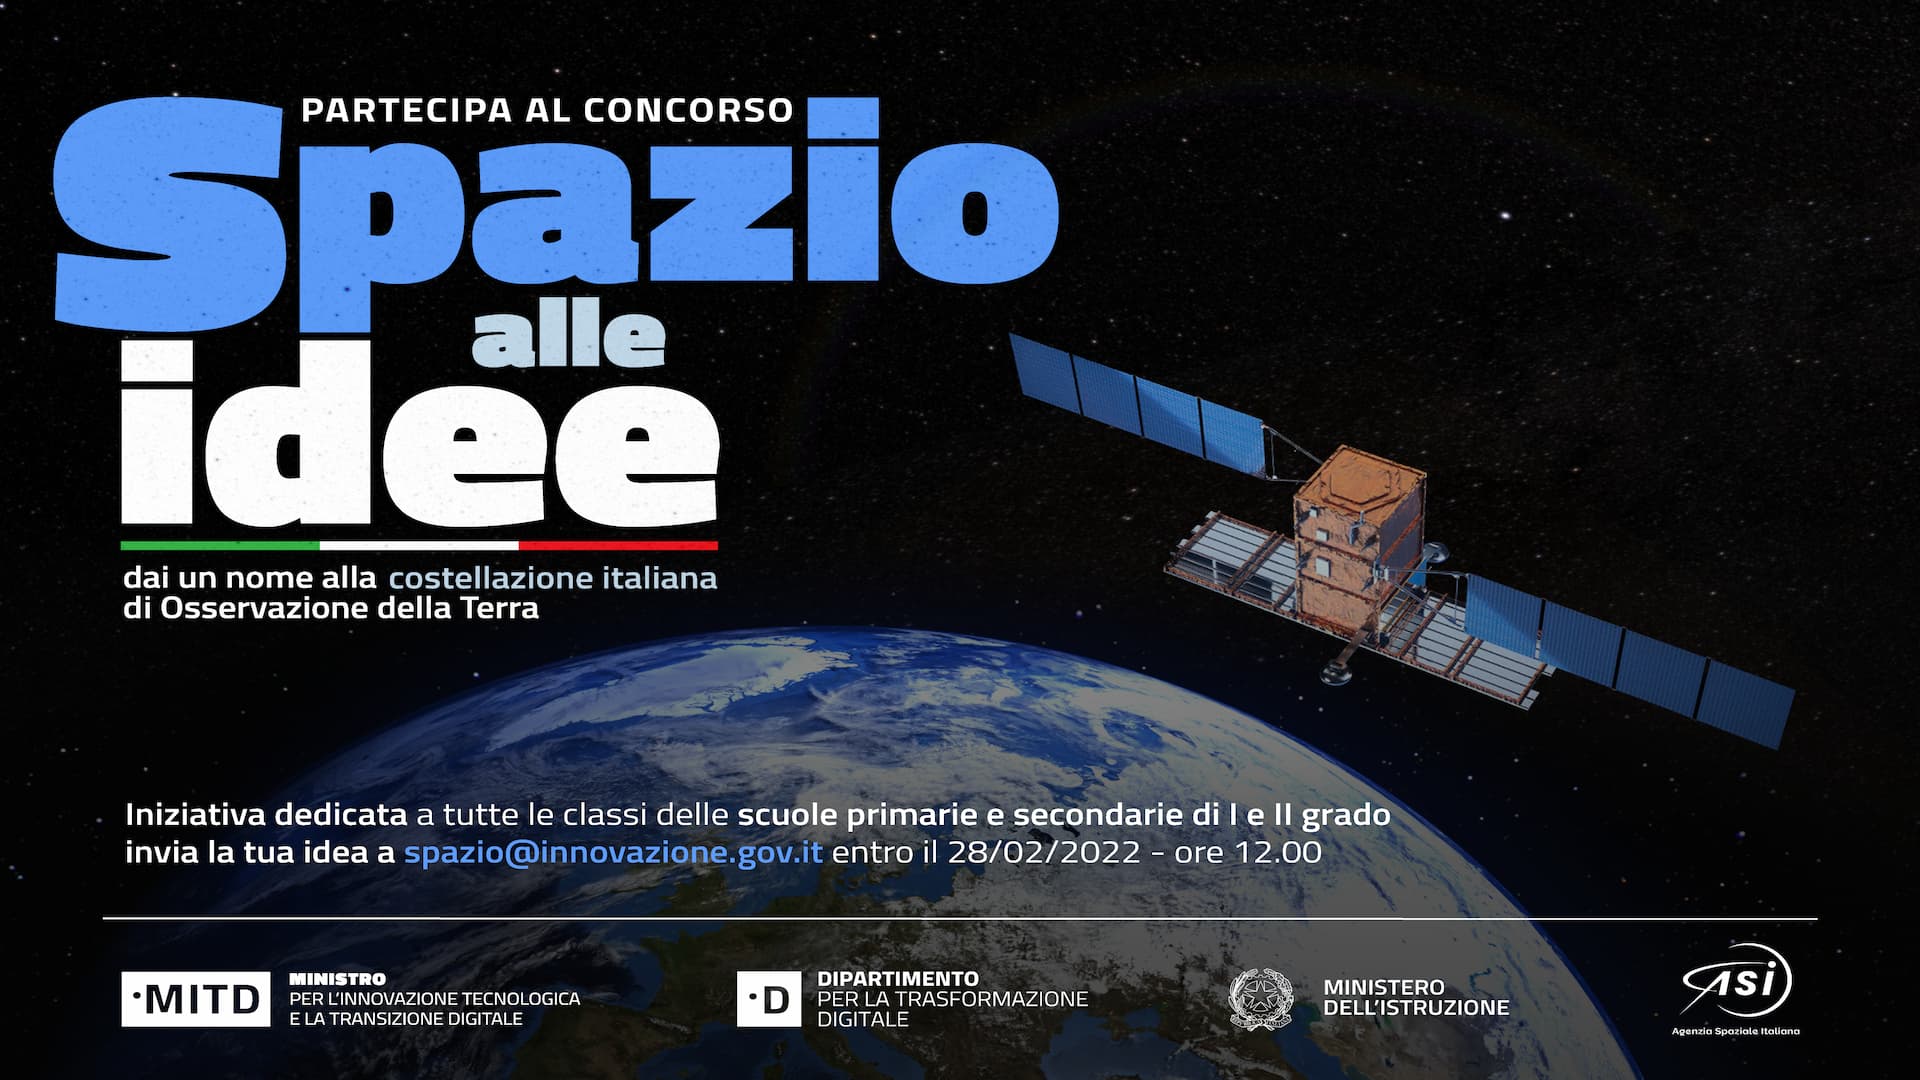 Spazio, via al concorso per il nome della costellazione satellitare italiana di Osservazione della Terra